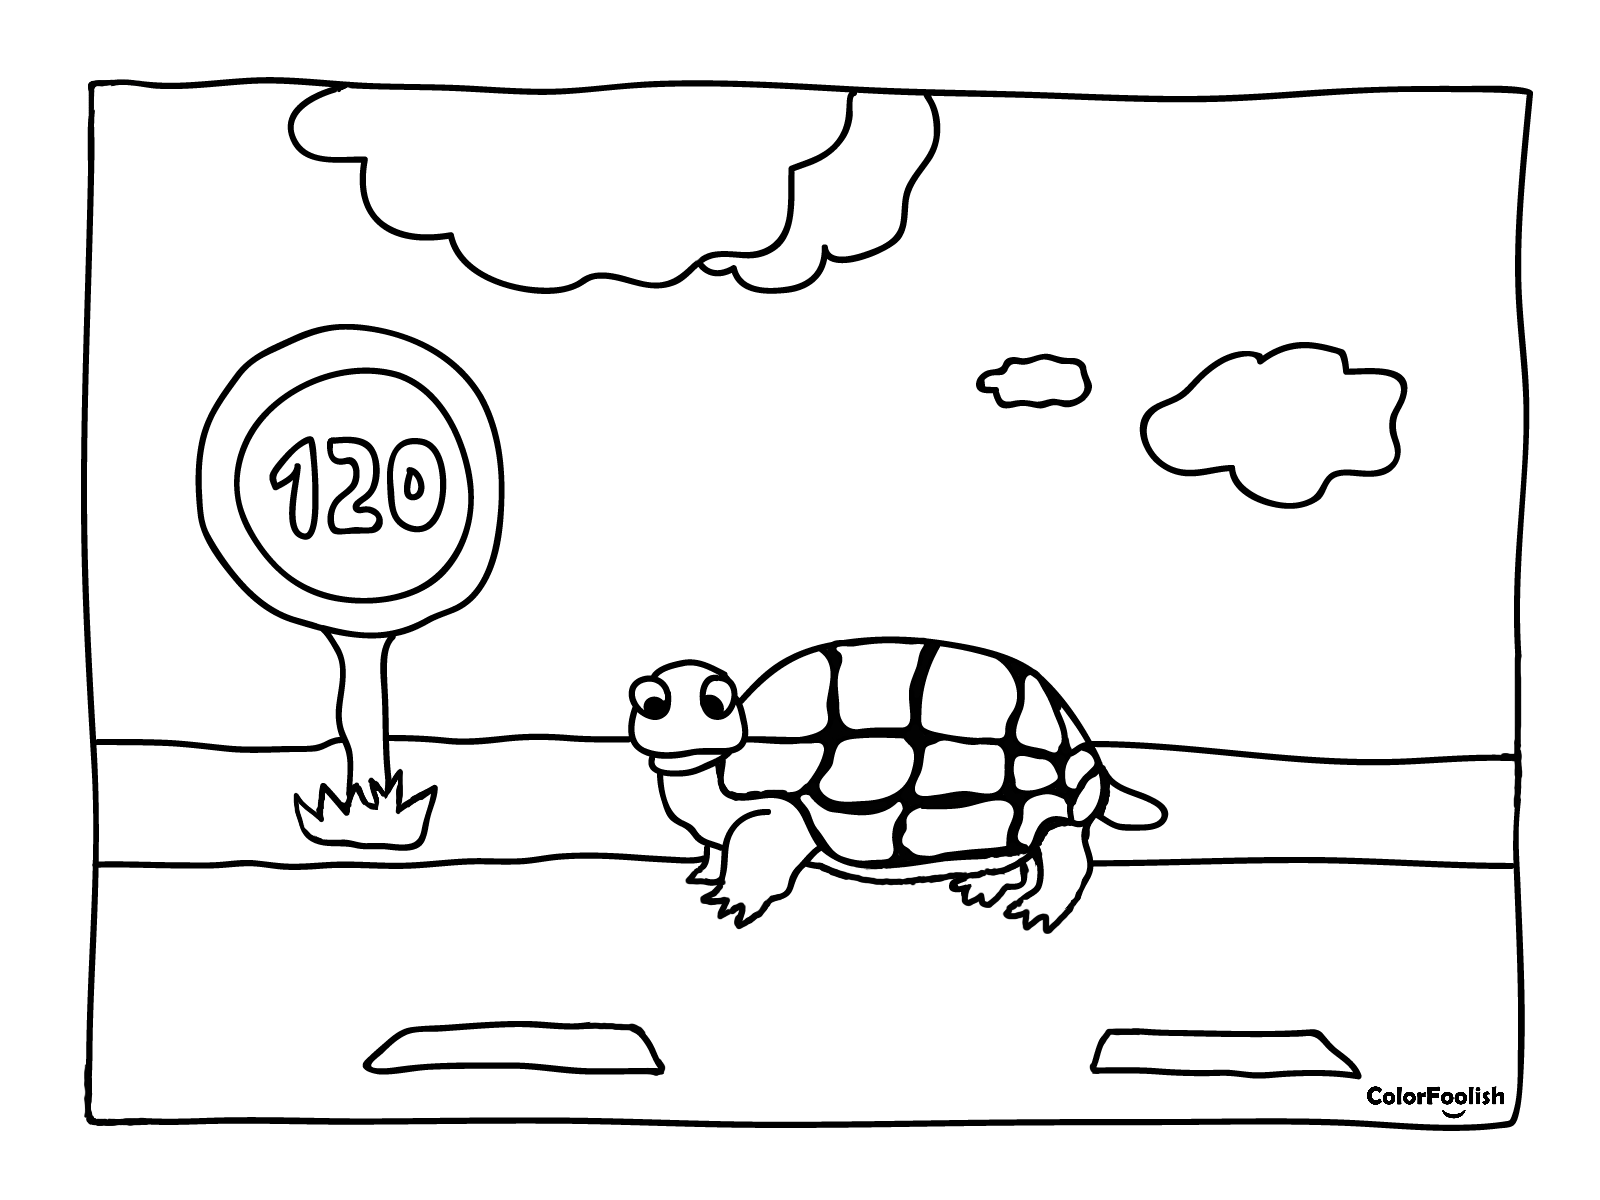 Stranica za bojanje kornjače ispod ograničenja brzine